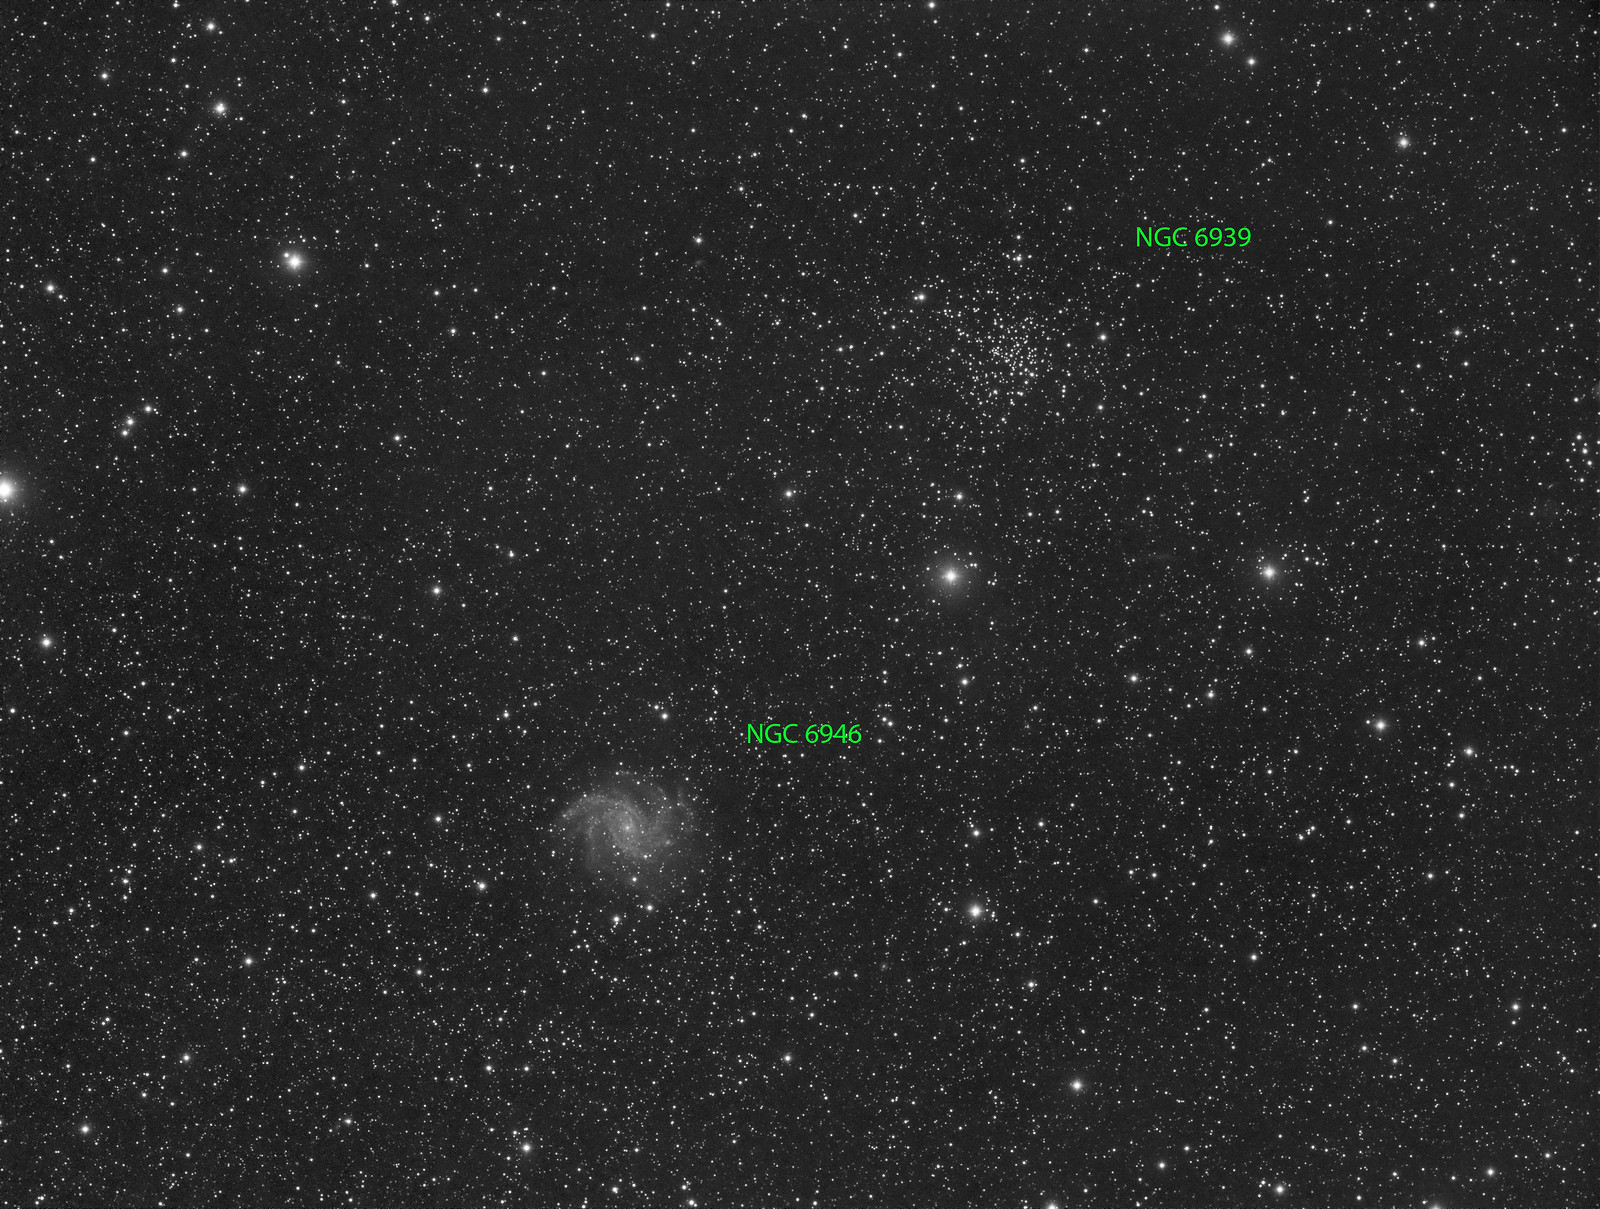 012 - NGC 6946 - Luminance